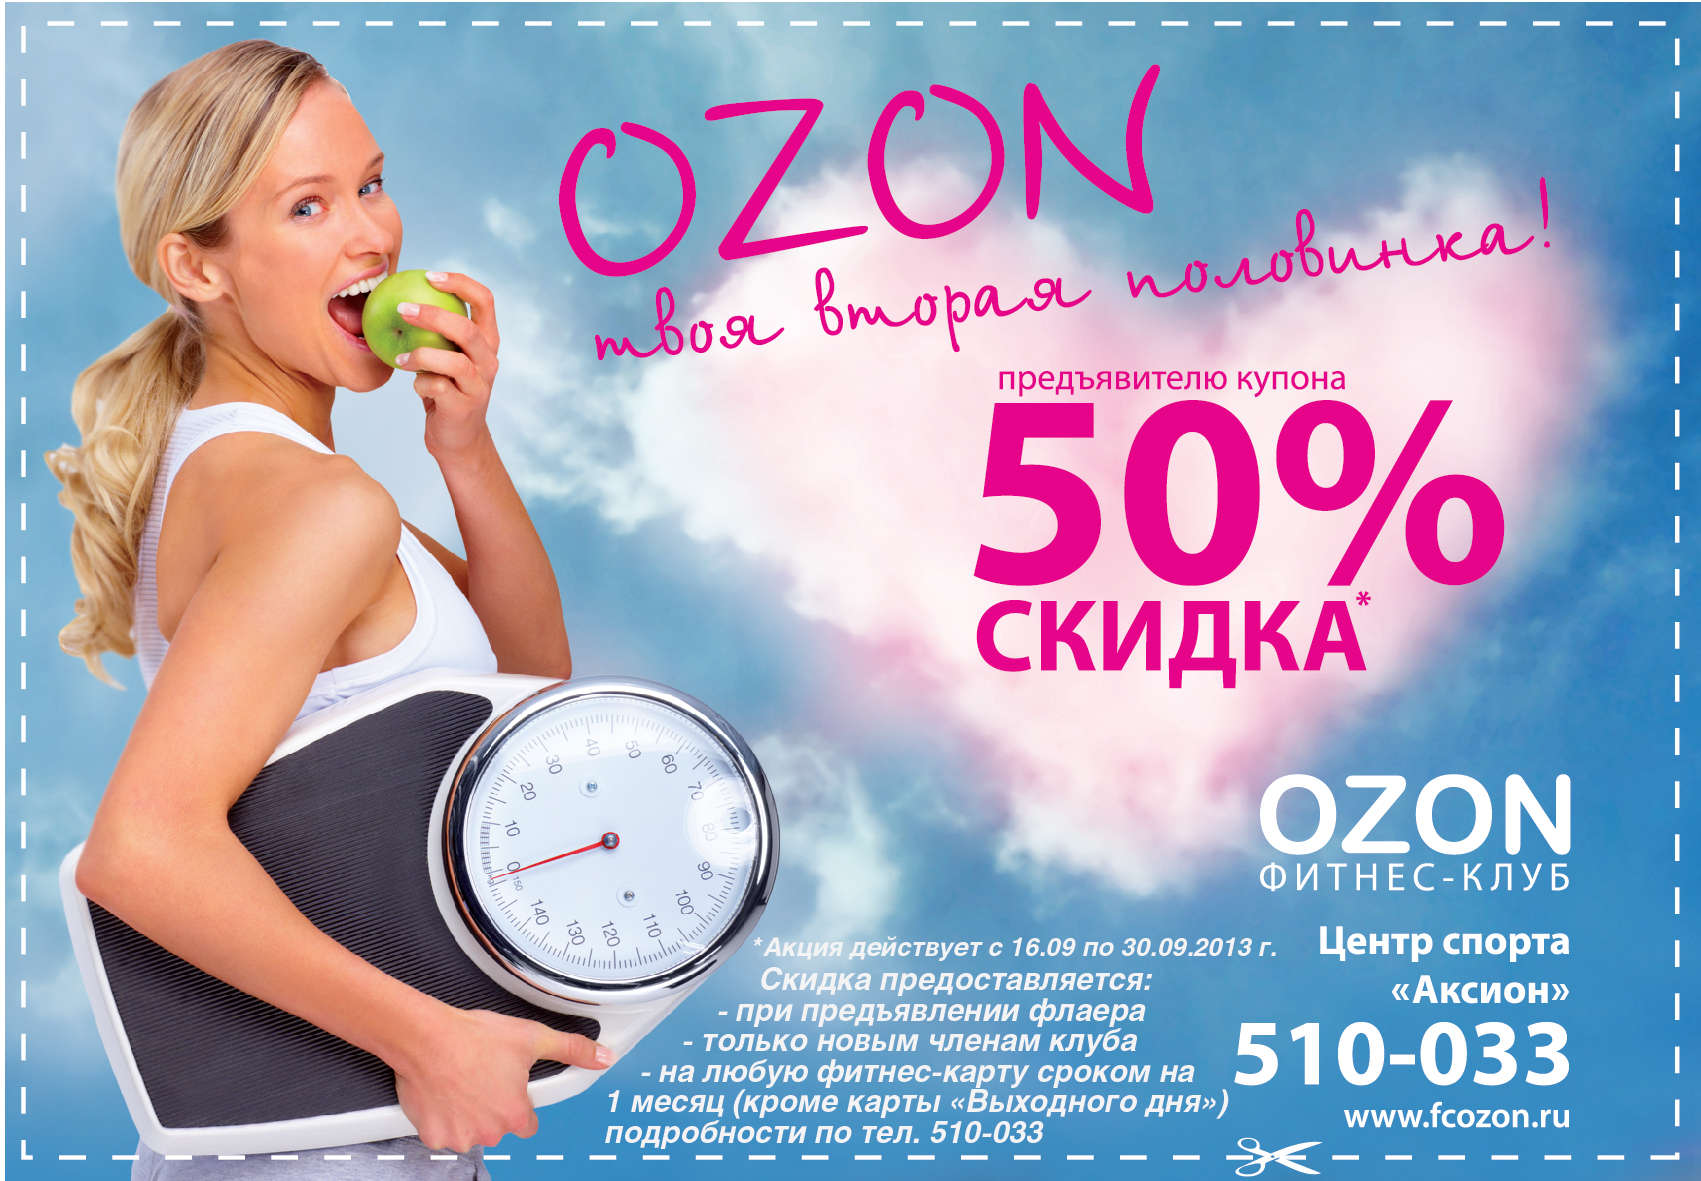 Рекламные акции магазина. OZON реклама. OZON скидки. Скидки. Баннер для акции Озон.